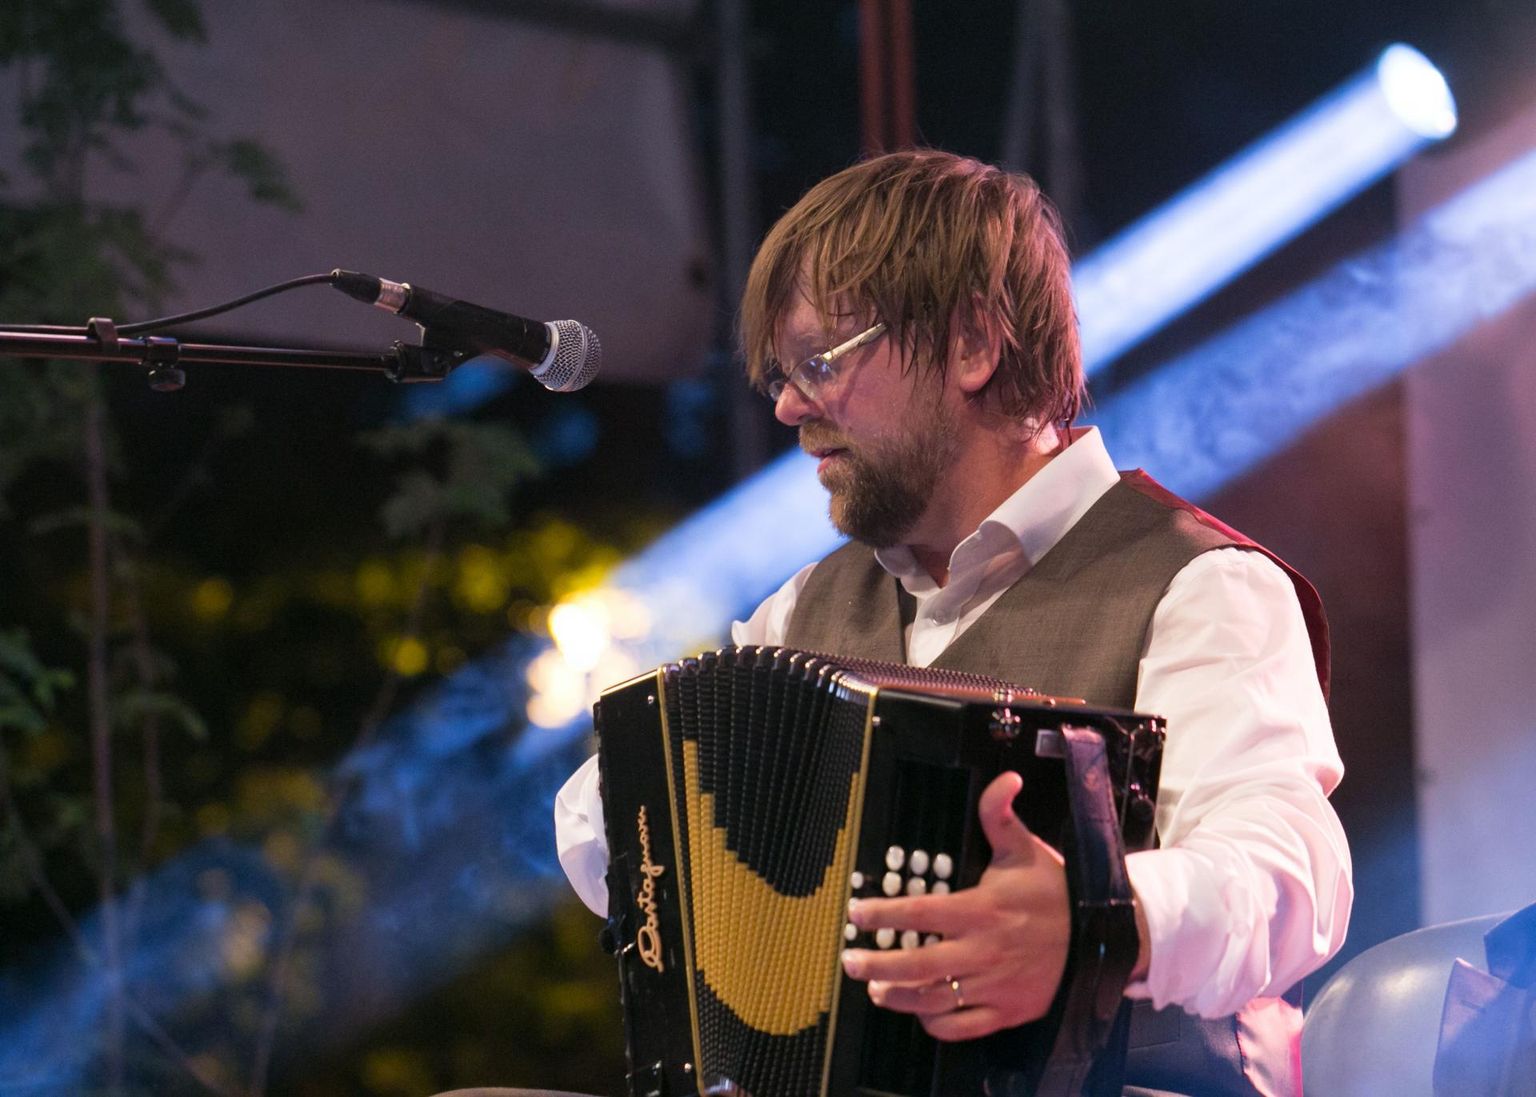 Soome muusik ja helilooja Antti Paalanen on folgifestivalil esinenud ka aastal 2014. Paalanen on tuntud oma orgaanilise esitusstiili, uute tehniliste võtete ning ekspressiivsete kõlapiltide poolest, mis aitavad akordioni potentsiaalil paremini esile tulla.